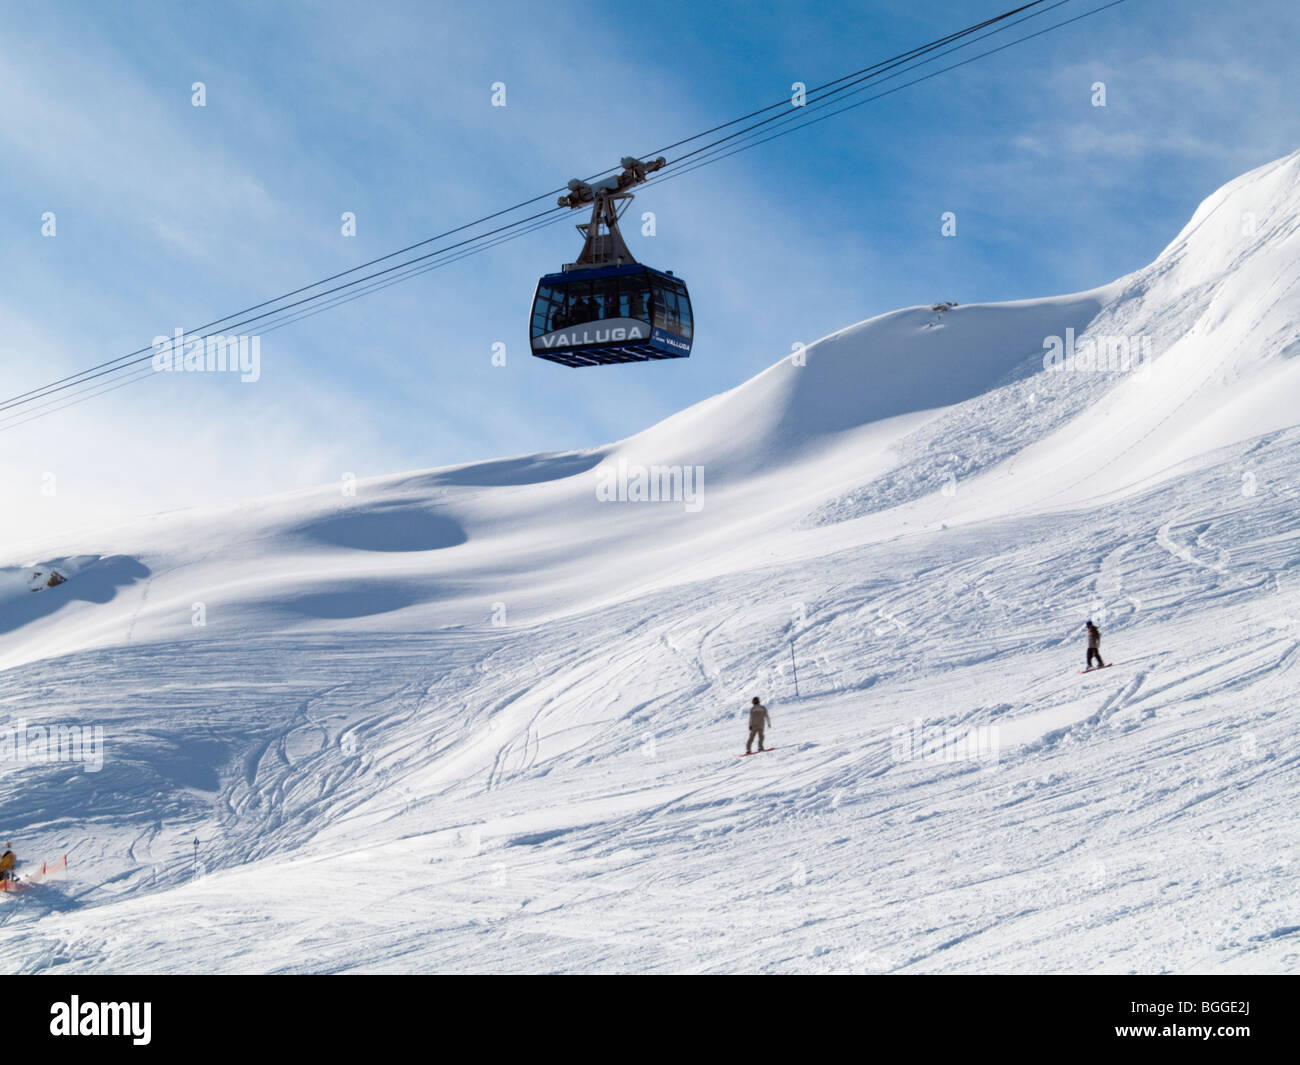 Valluga cable car au-dessus de la neige sur les pistes de ski de montagne Galzig dans les Alpes autrichiennes en hiver. St Anton am Arlberg, Tyrol, Autriche, Europe. Banque D'Images